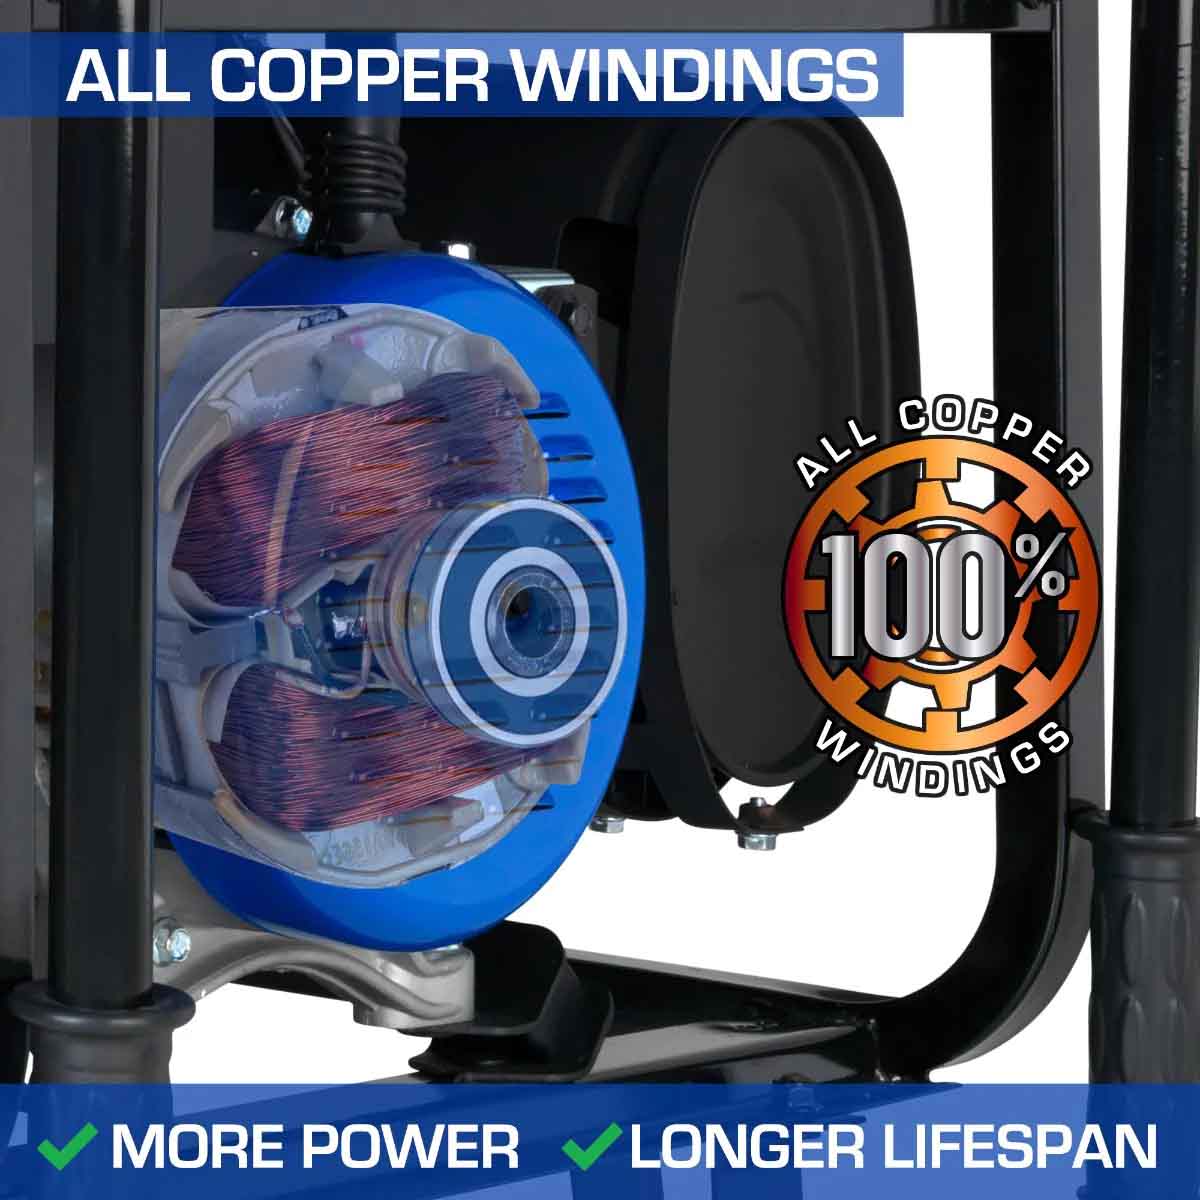 DuroMax XP13000E Gasoline Portable Generator Has All Copper Windings